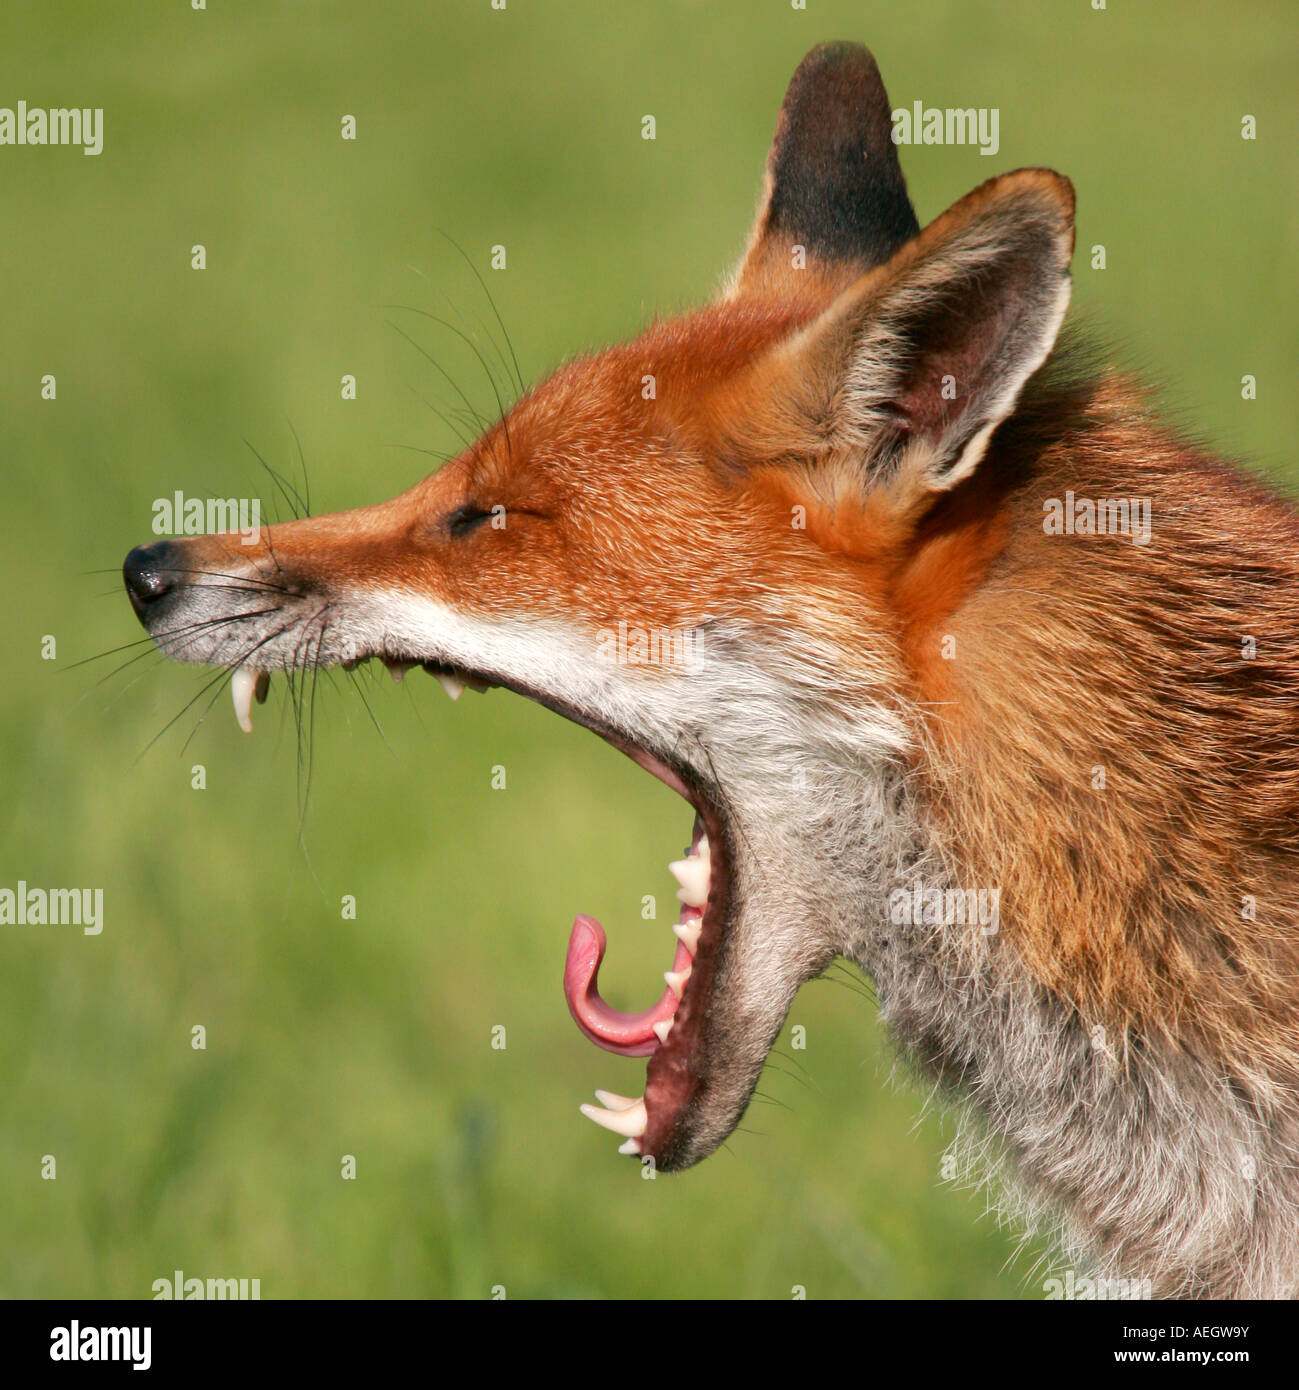 Captive Red Fox, Vulpes vulpes, dal British Centro faunistico, REGNO UNITO Foto Stock